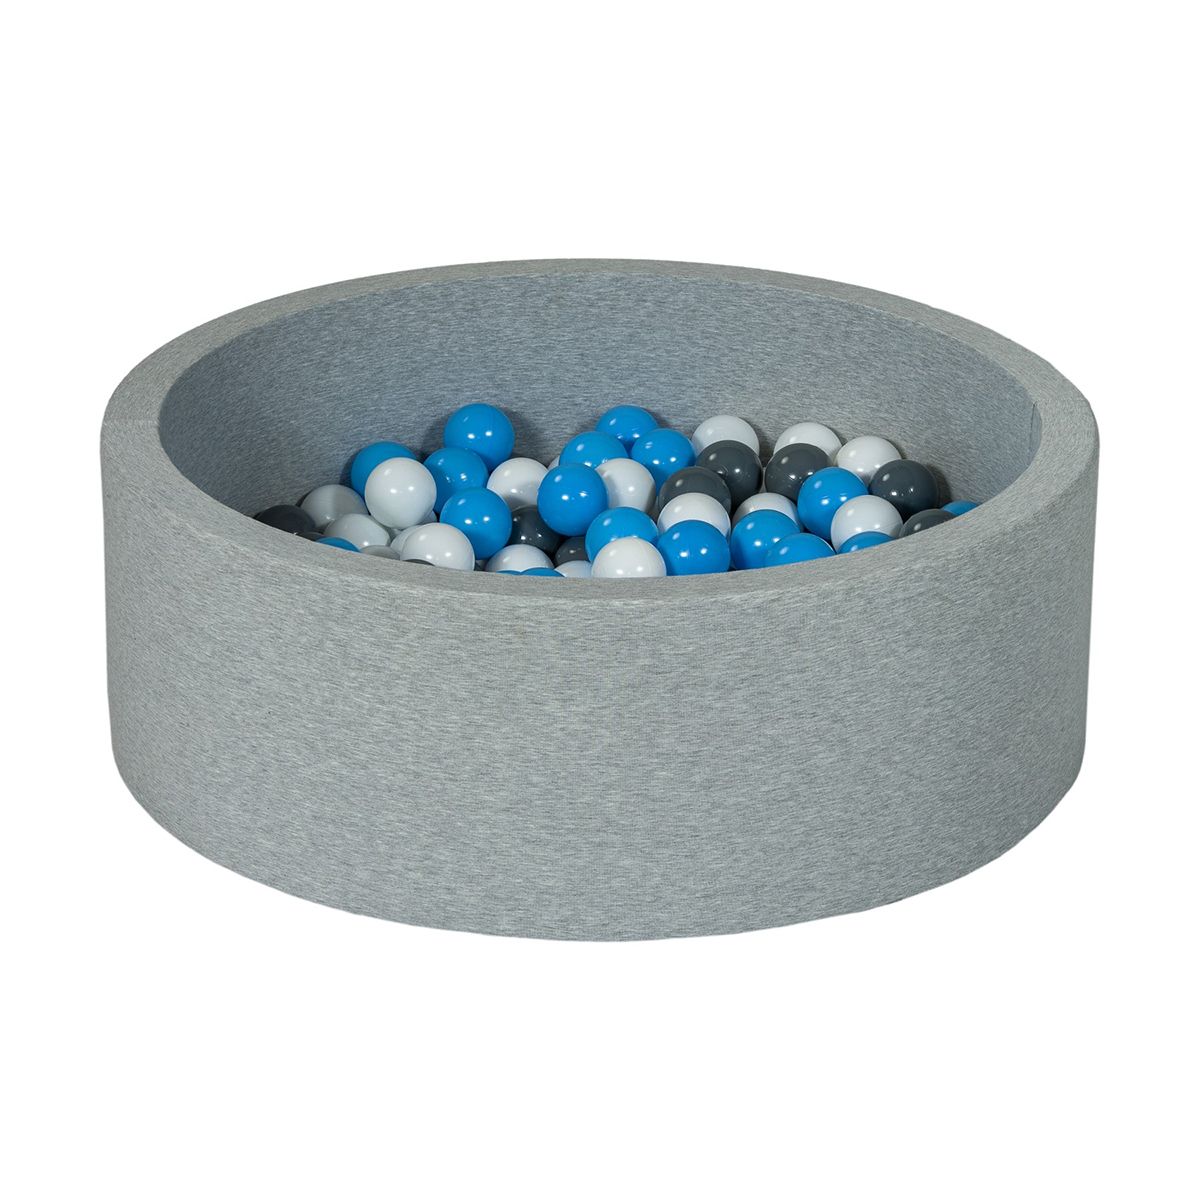  Piscine à balles Aire de jeu + 150 balles blanc, gris, bleu clair